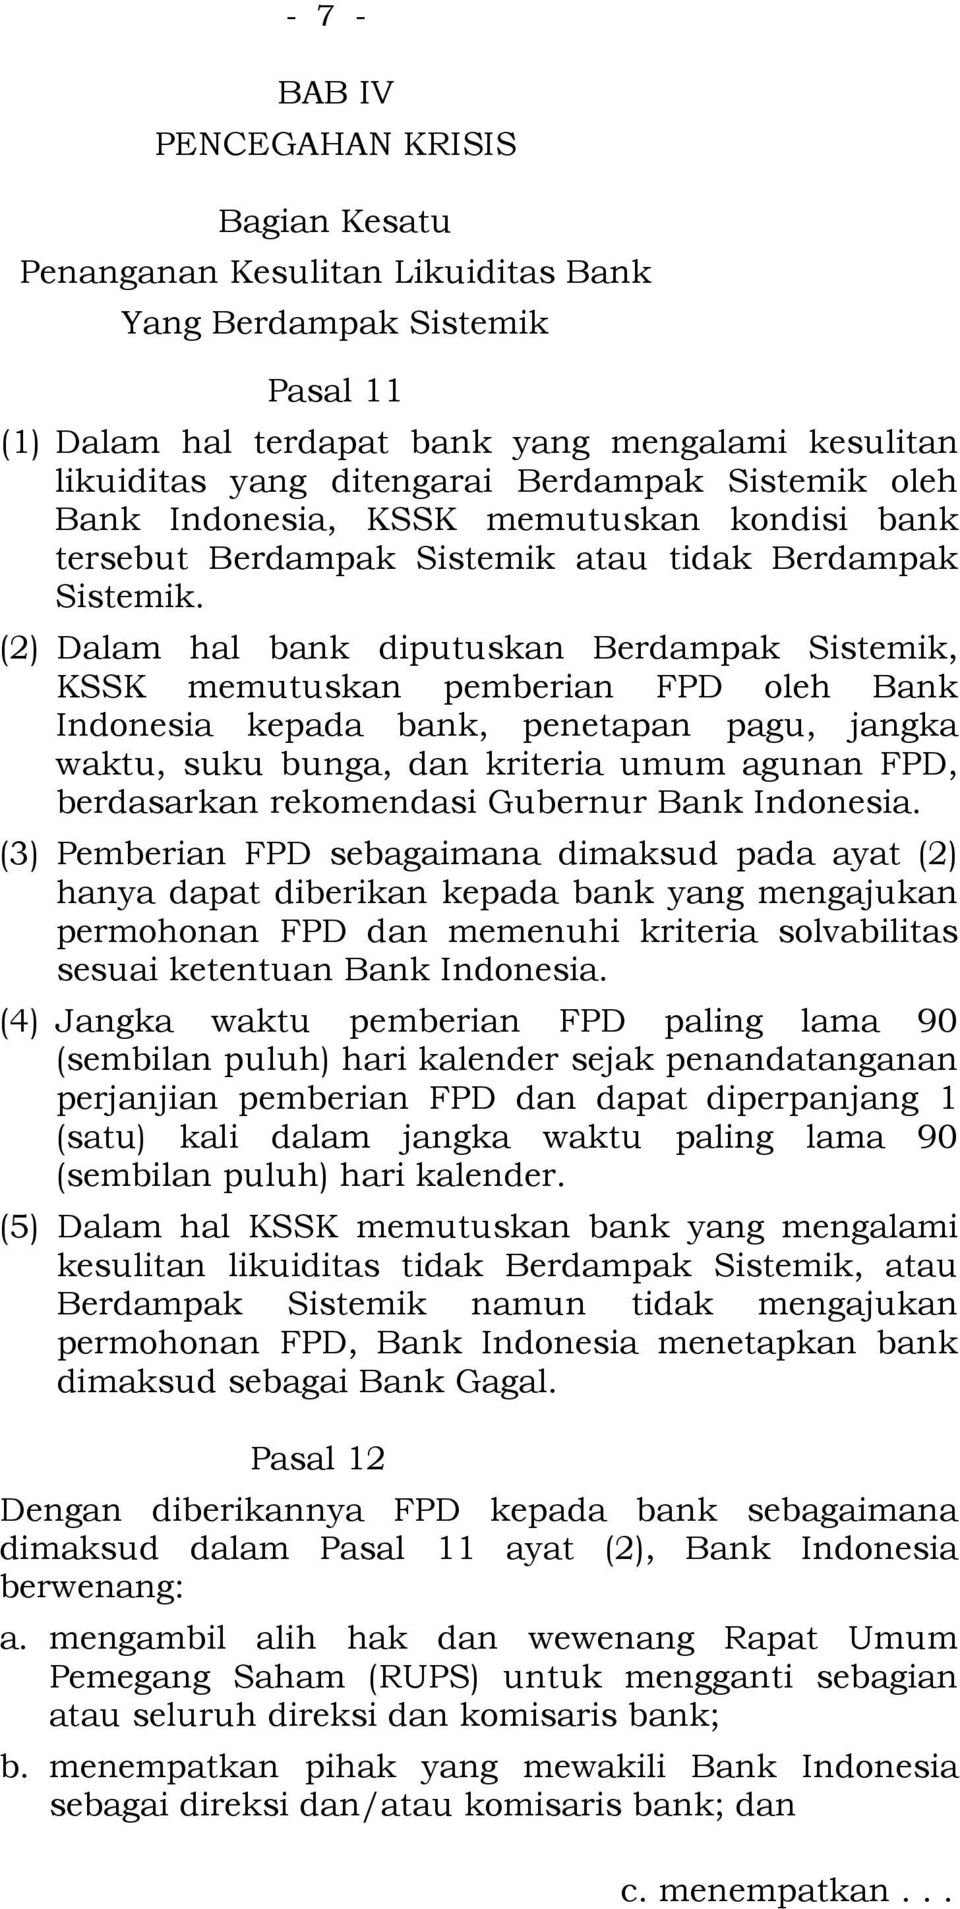 (2) Dalam hal bank diputuskan Berdampak Sistemik, KSSK memutuskan pemberian FPD oleh Bank Indonesia kepada bank, penetapan pagu, jangka waktu, suku bunga, dan kriteria umum agunan FPD, berdasarkan